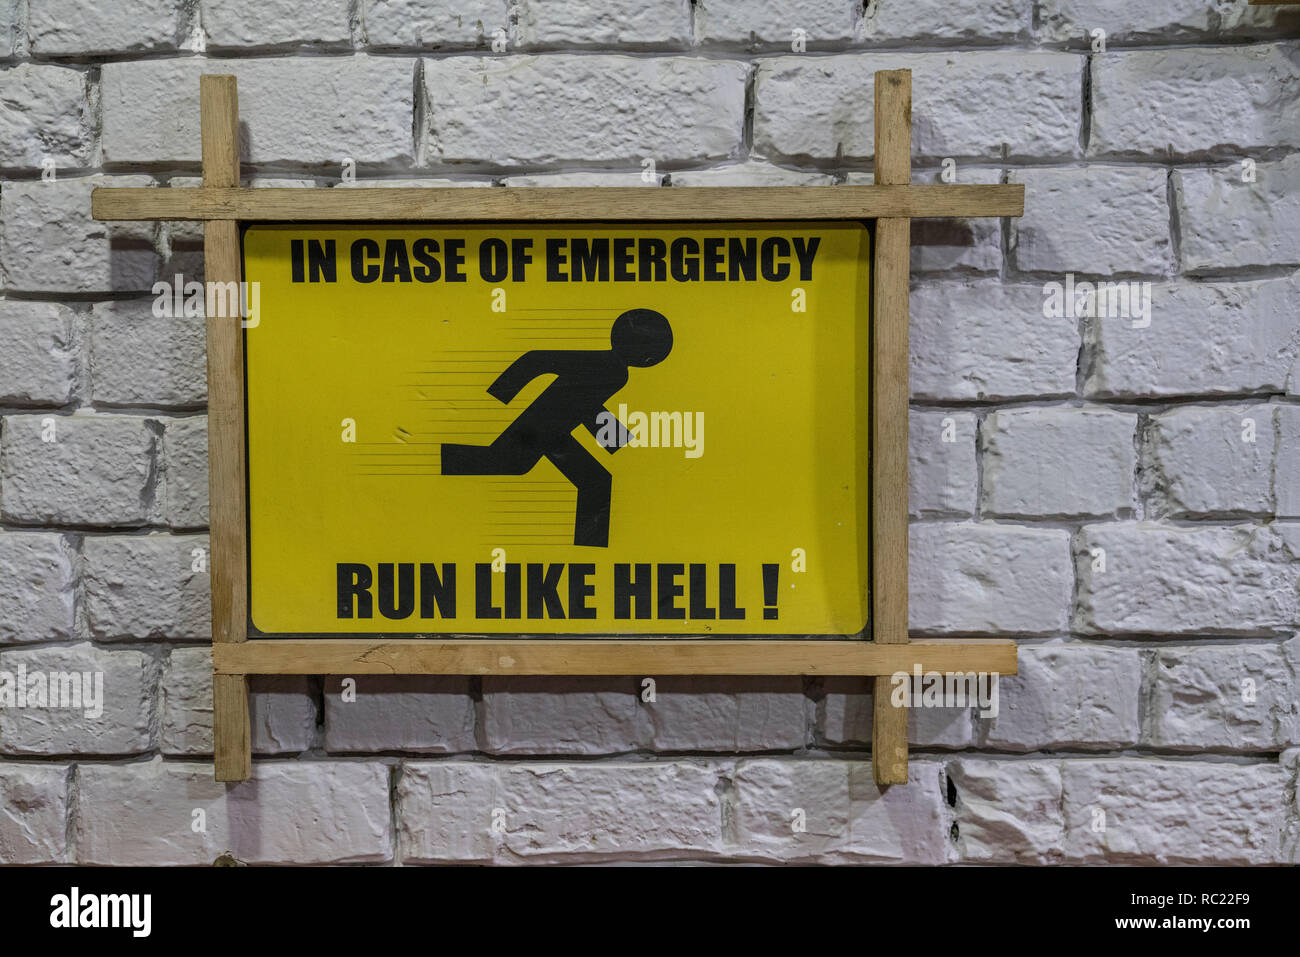 Nuova Dehli, India / Febbraio 19, 2018 - Segno dice "In caso di emergenza, eseguire come l'inferno!' Foto Stock